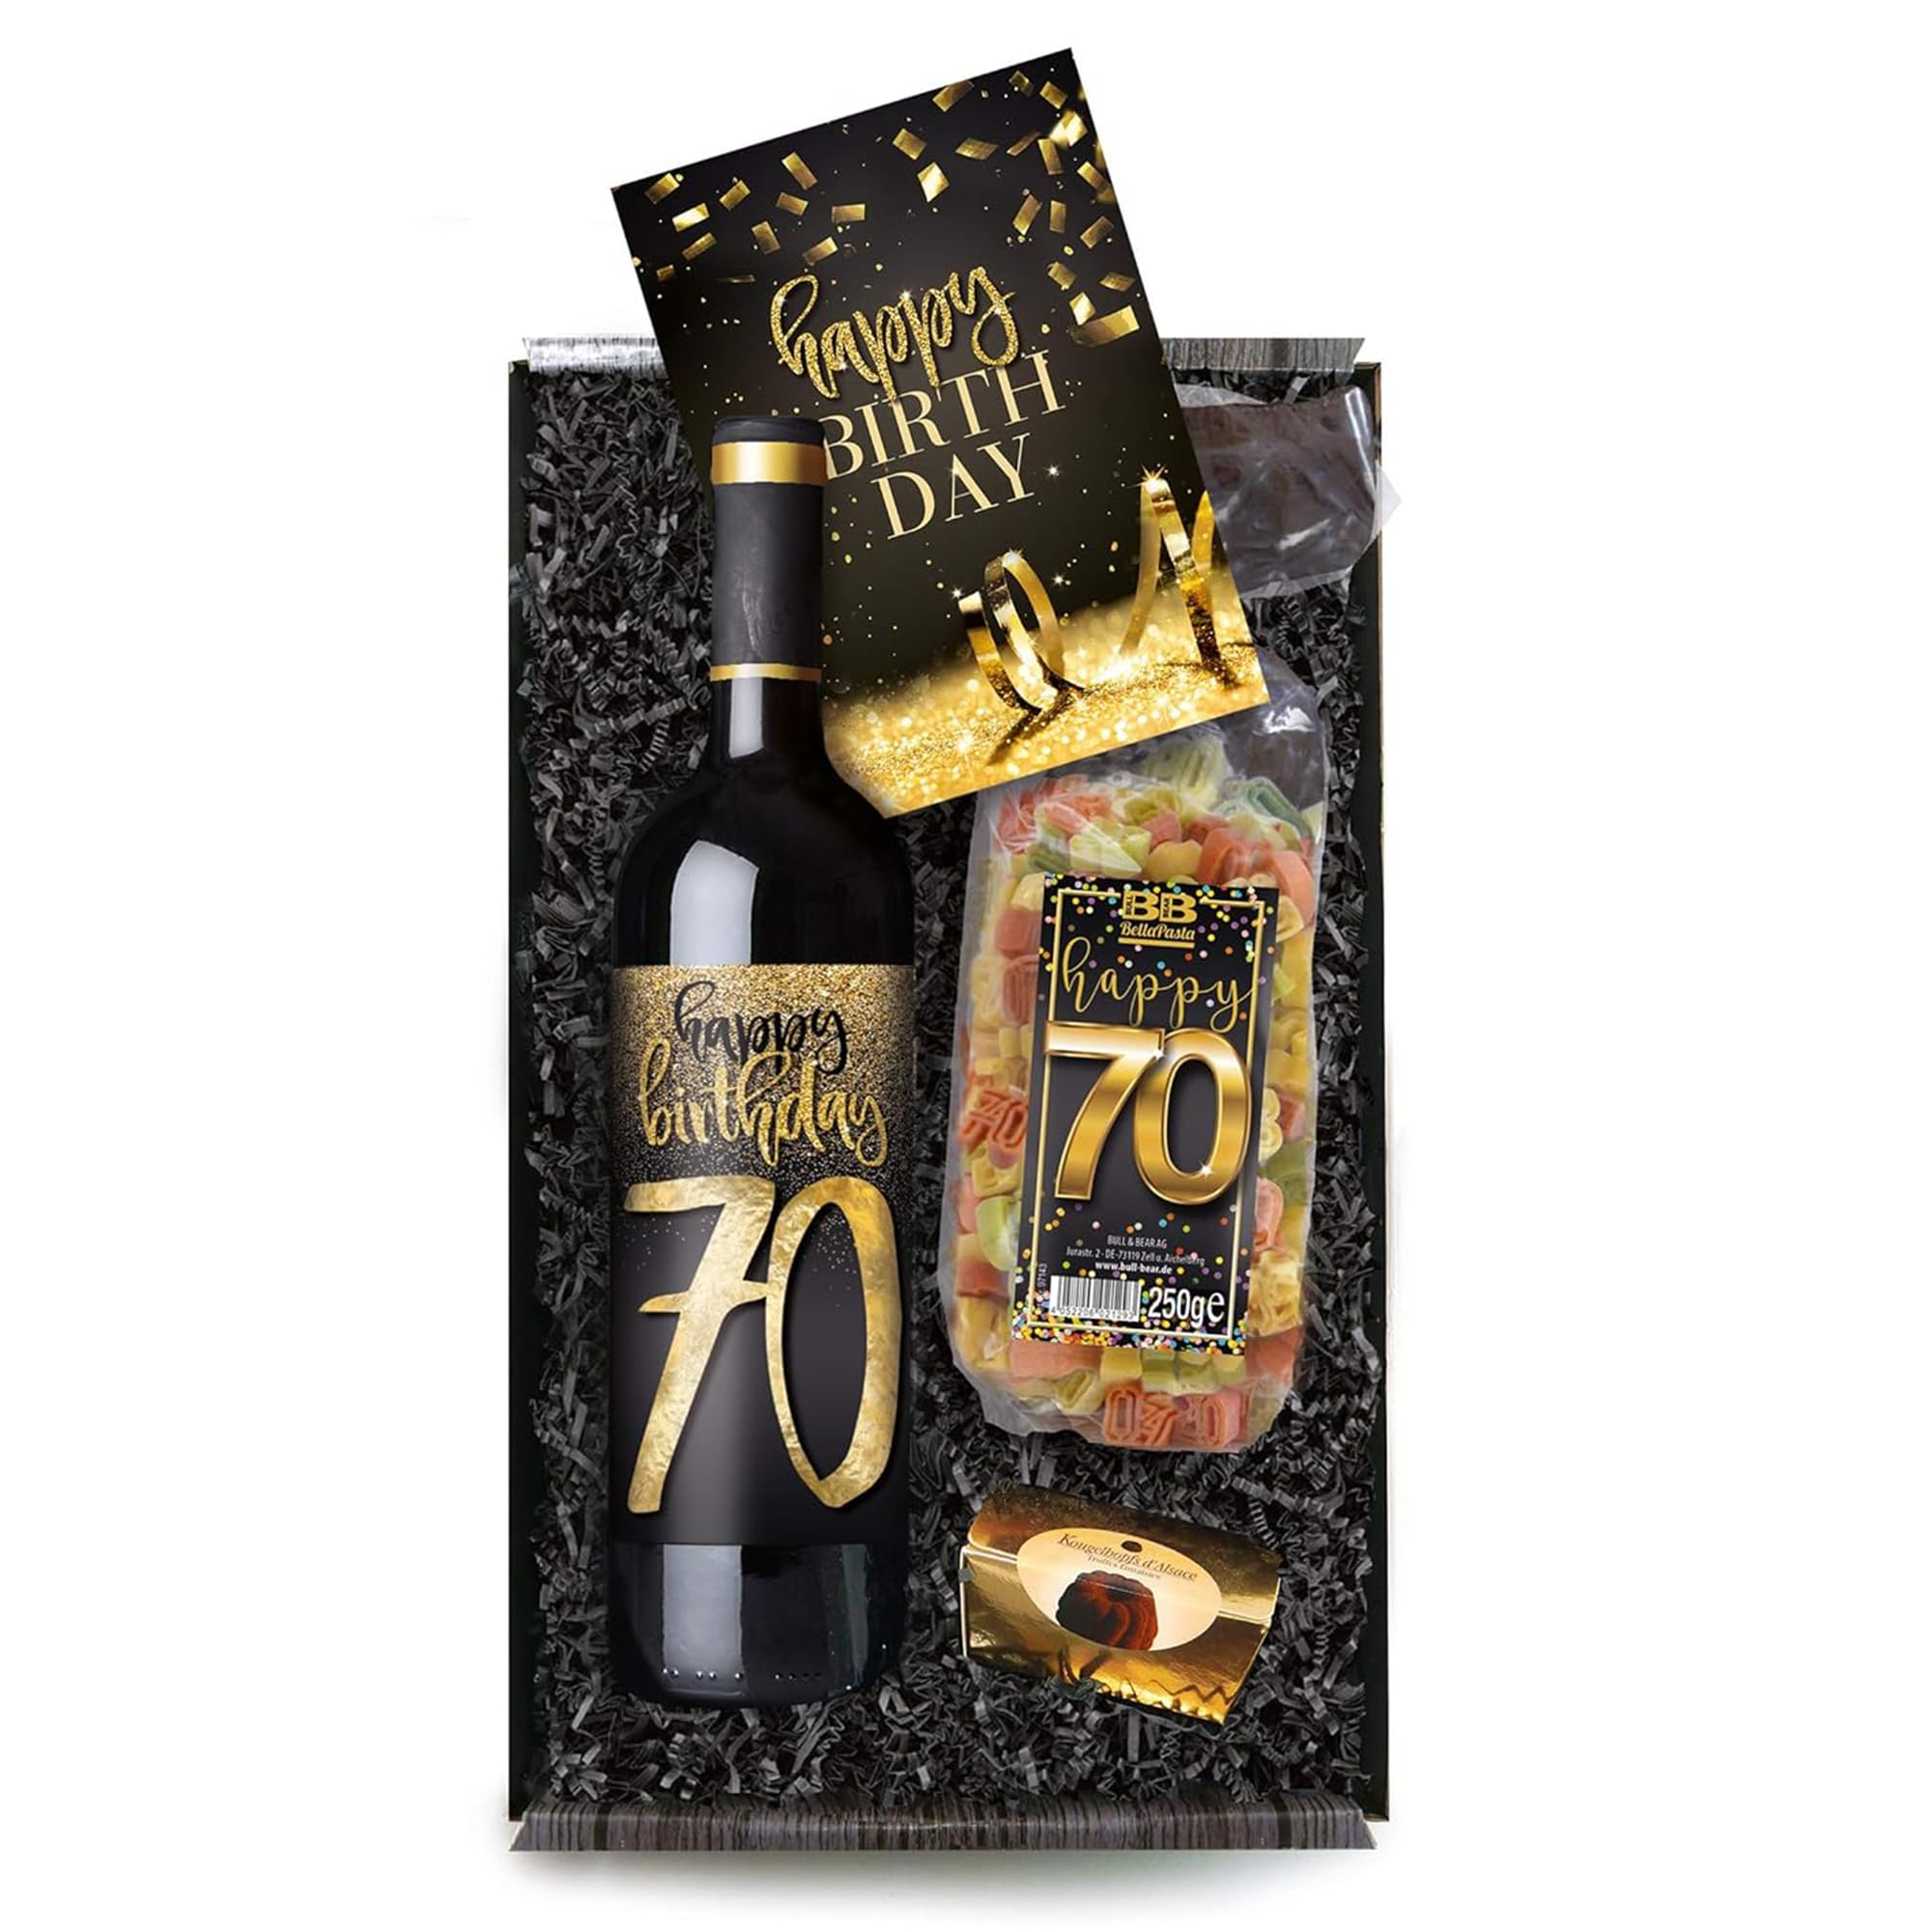 Bull & Bear Geschenkbox "Happy Birthday 70", Set mit Rotwein und Geburtstagskarte, Geschenk zum 70. Geburtstag